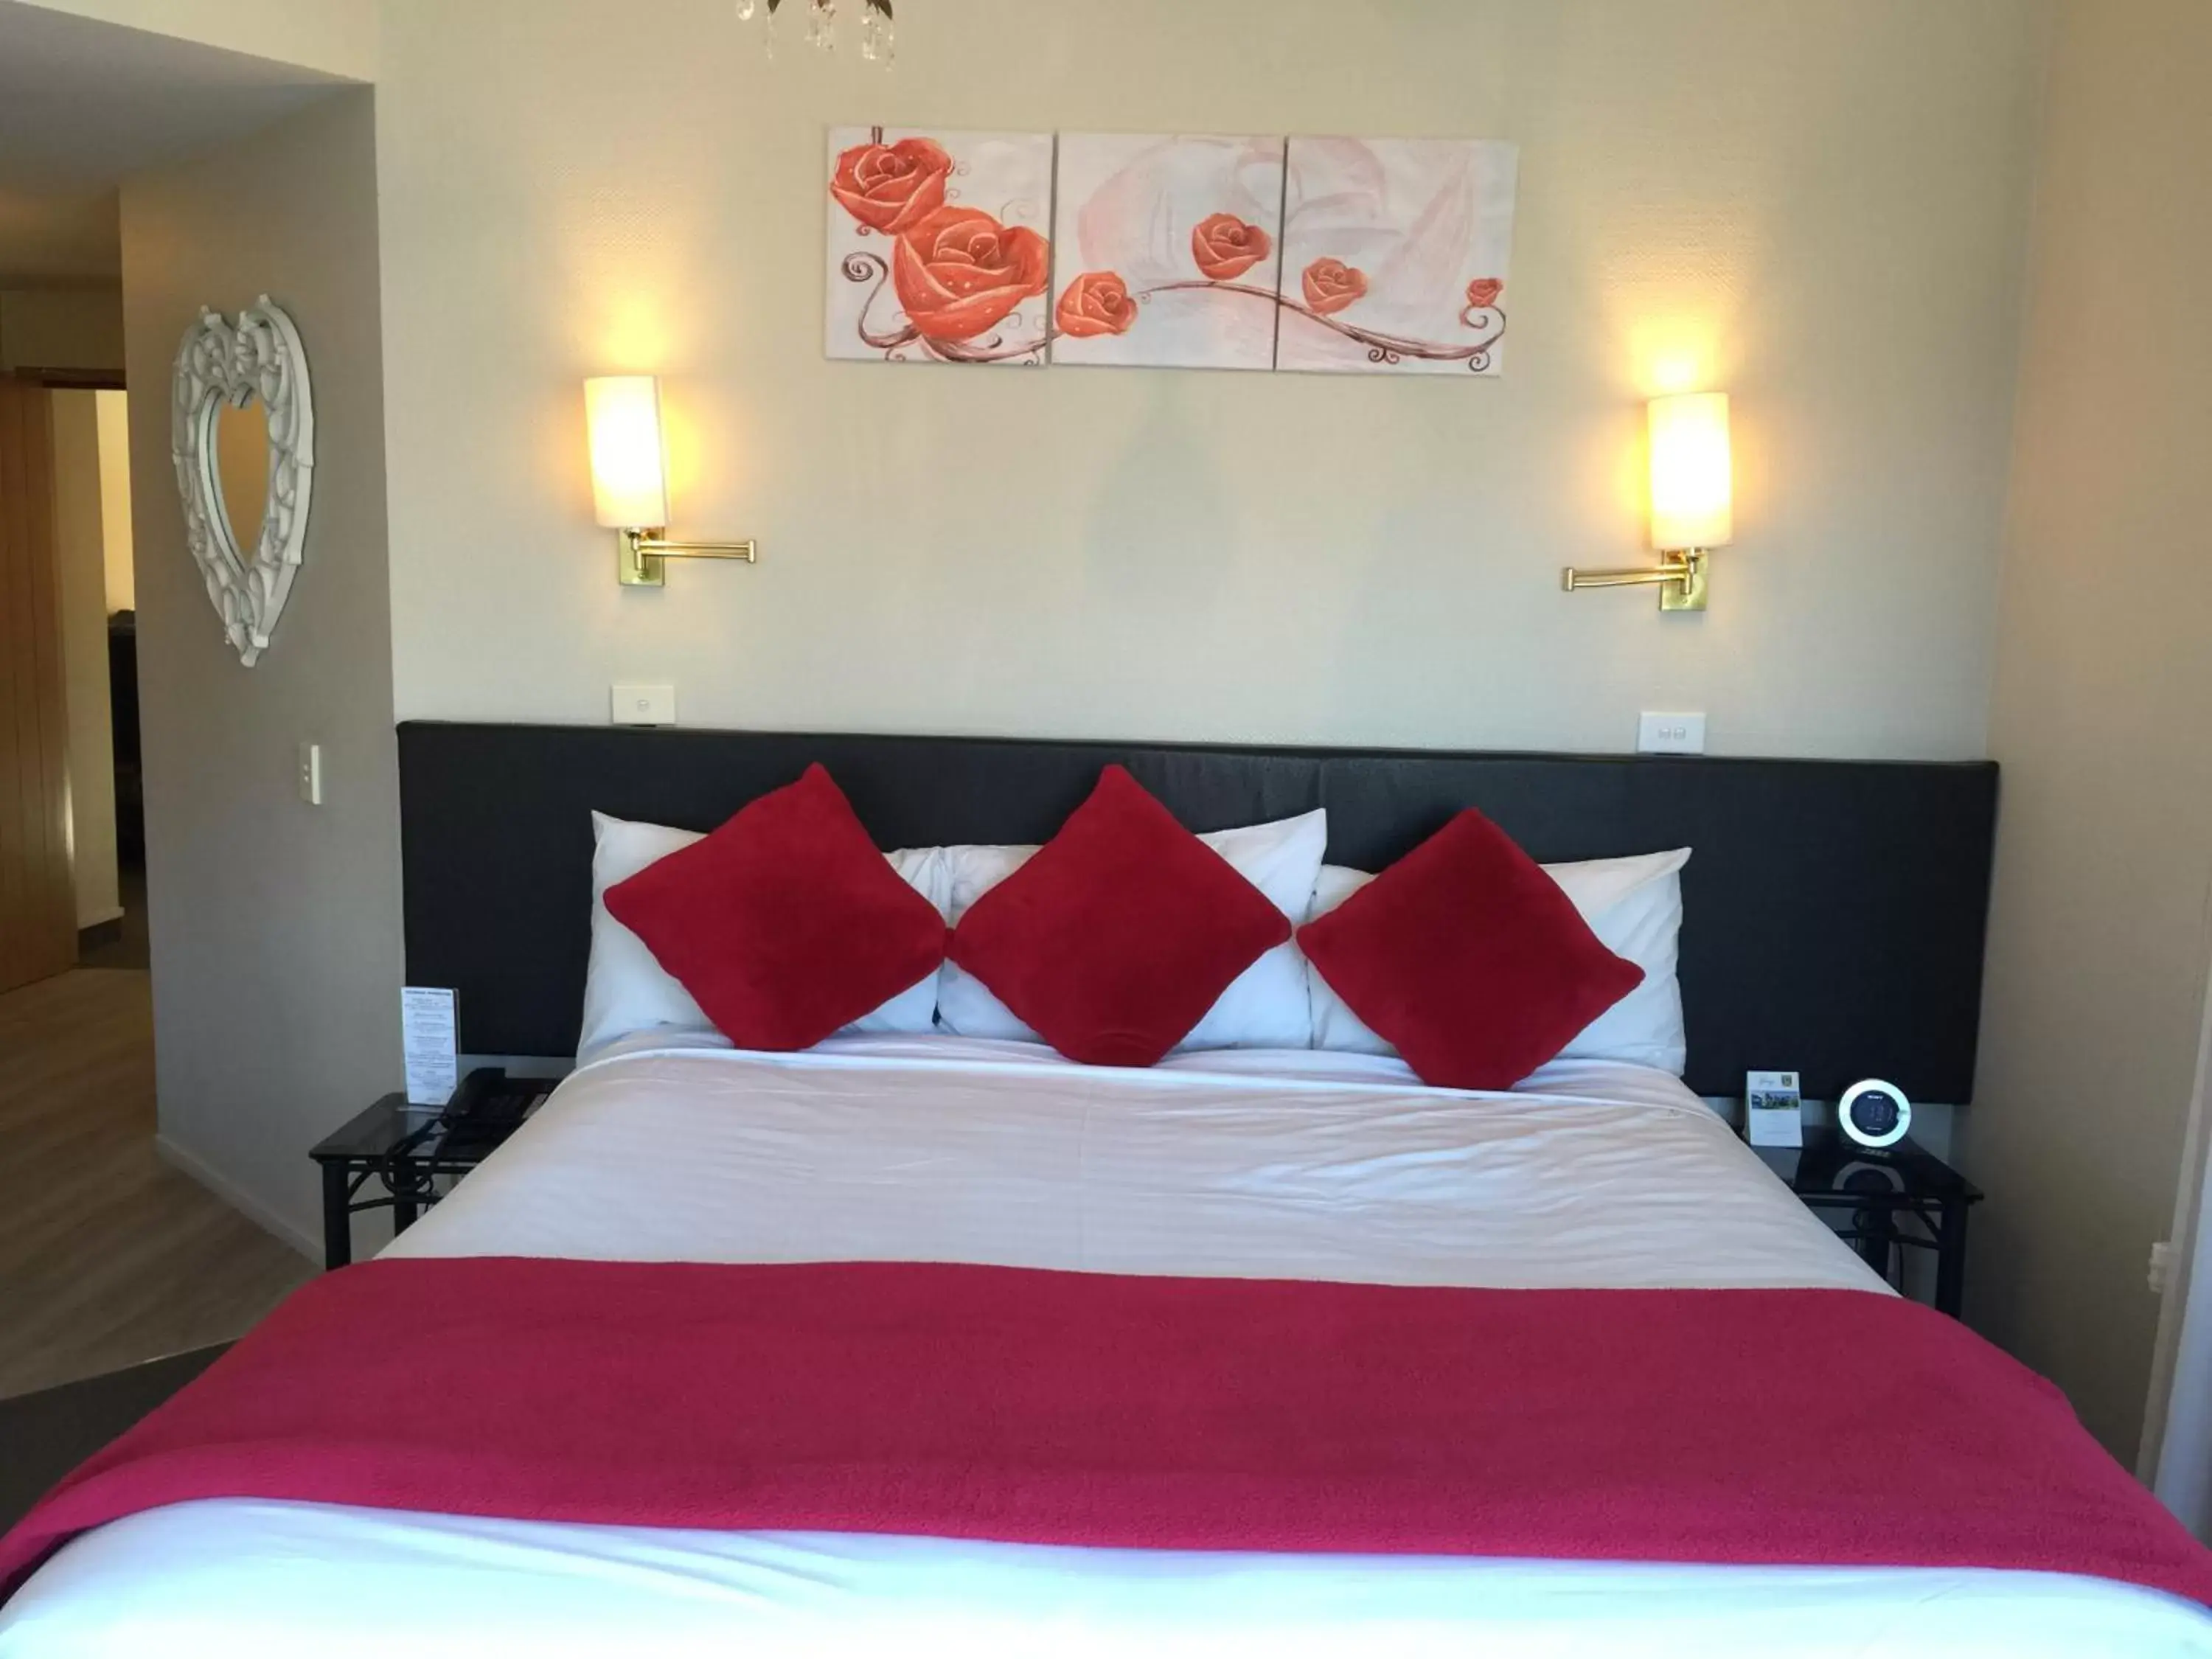 Bed, Room Photo in Hurley's of Queenstown